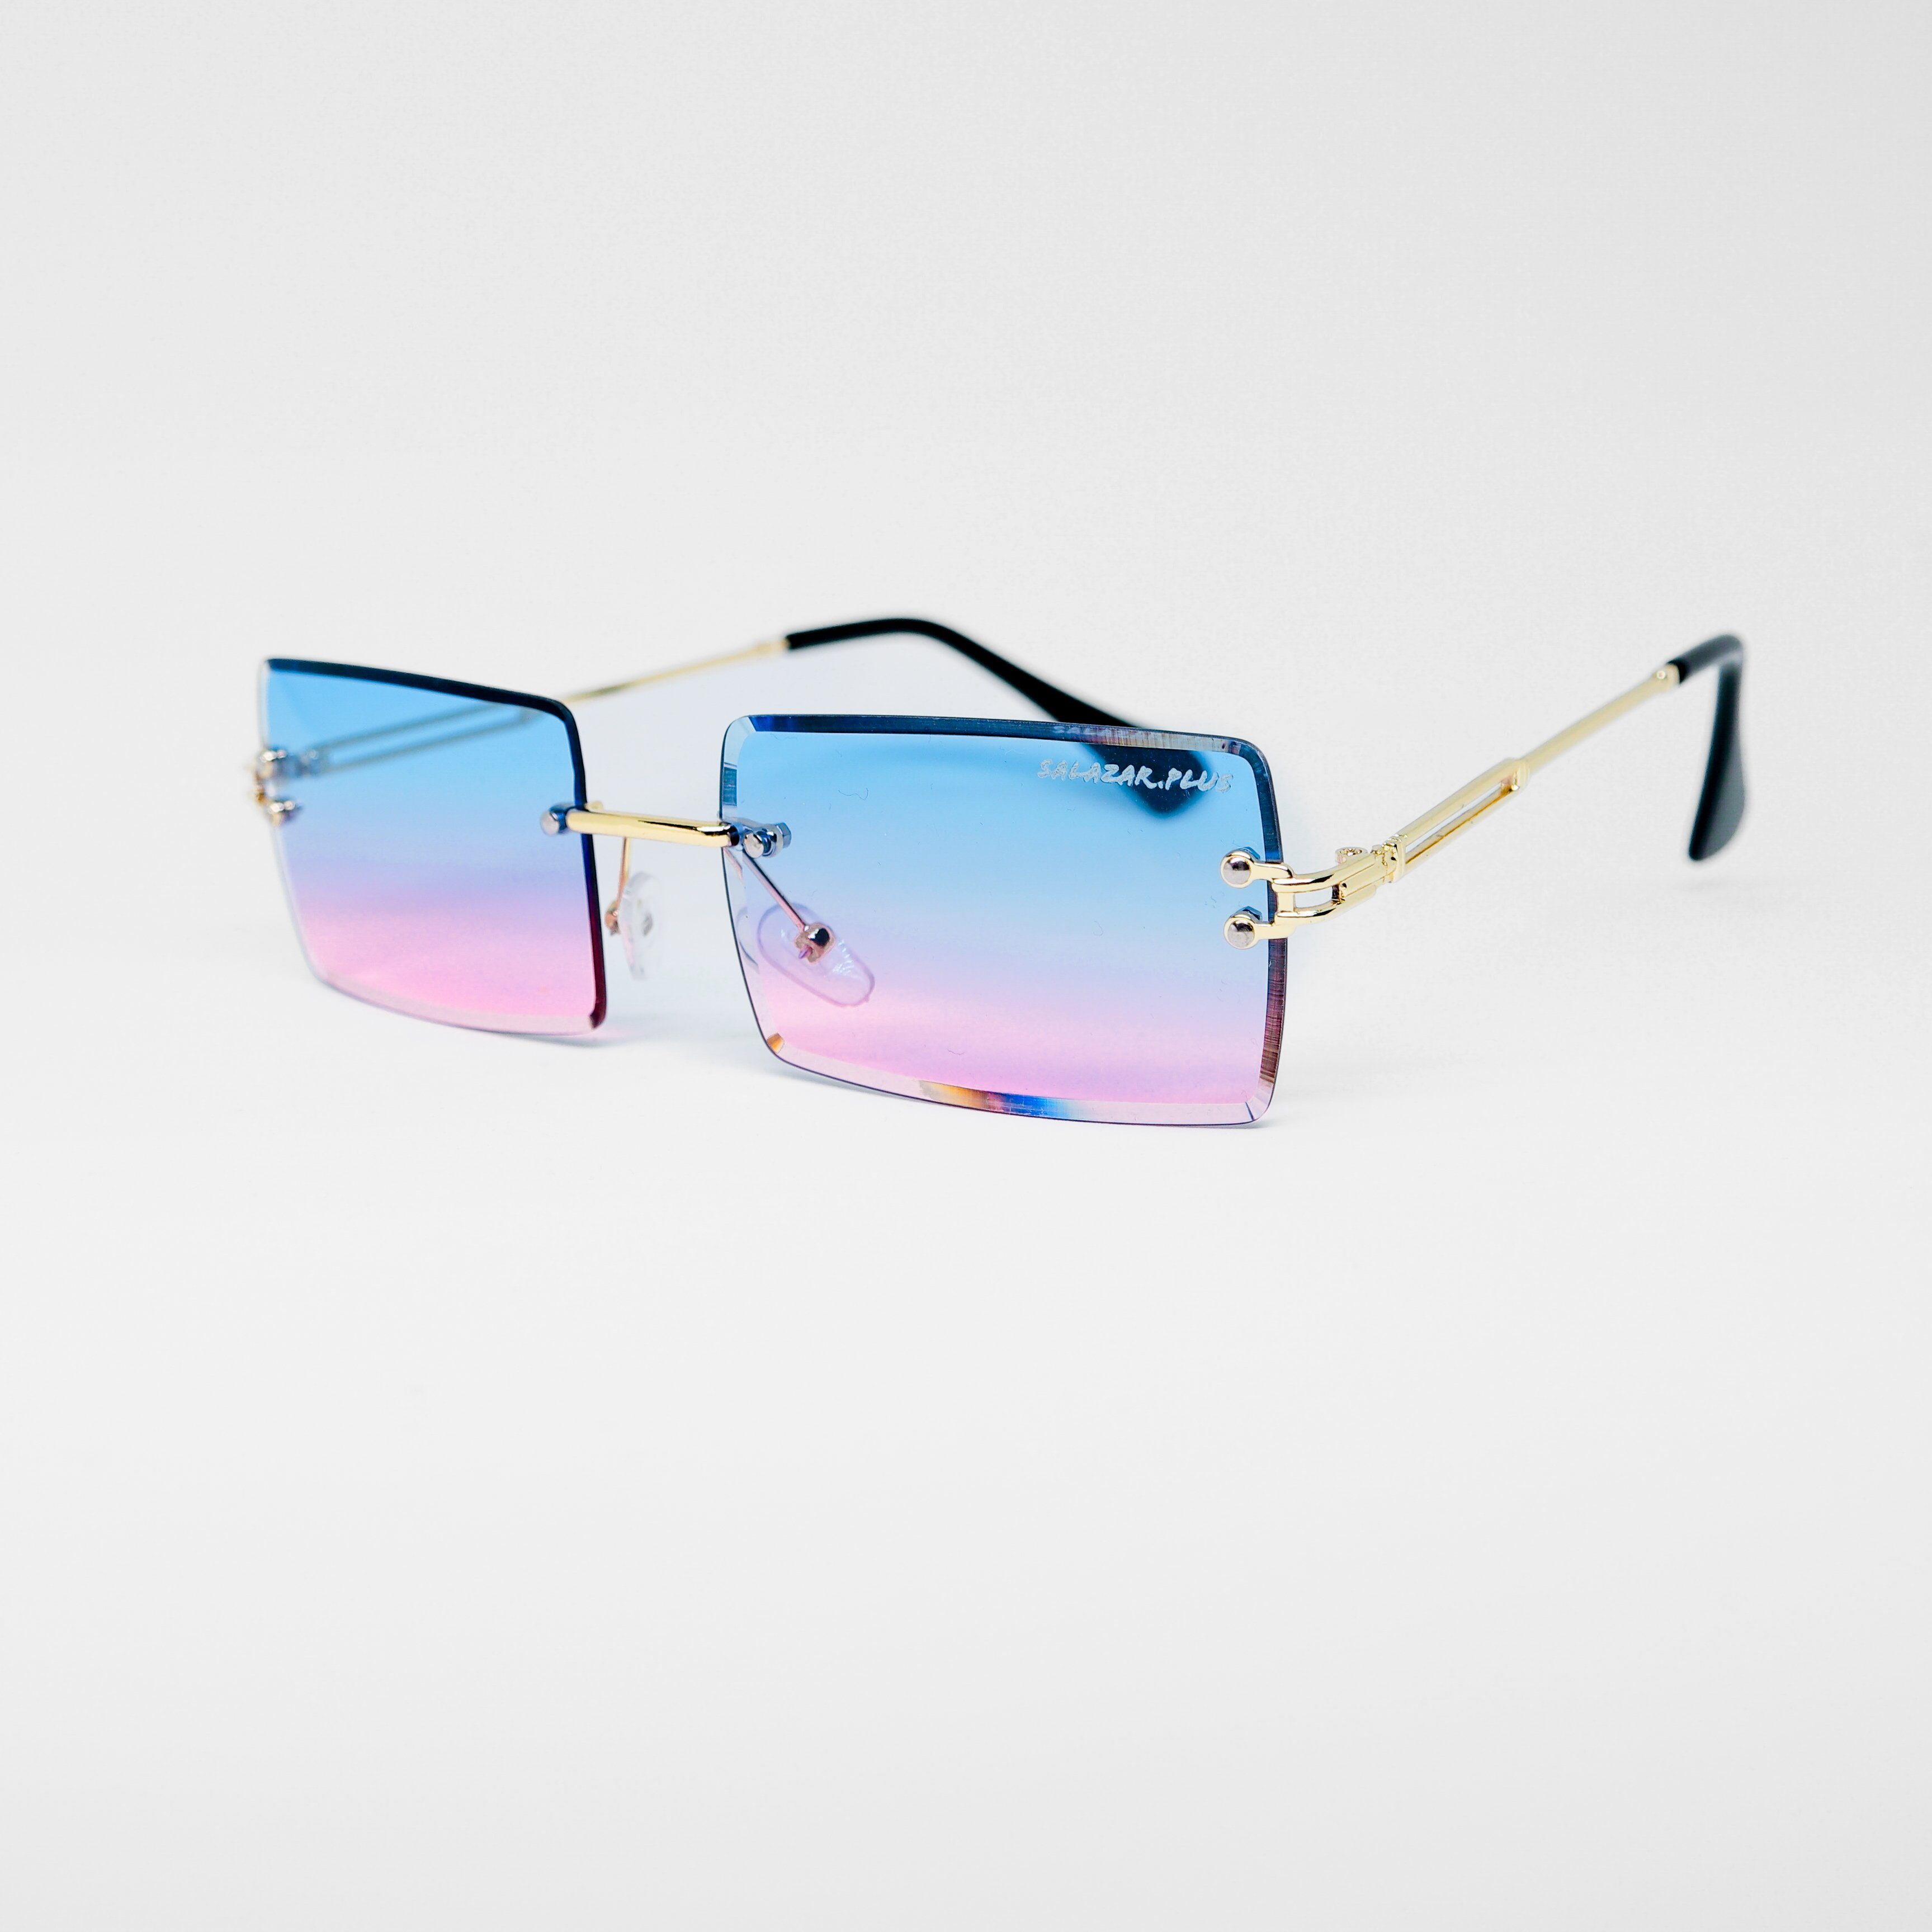 Herren Farbverlauf Brille Unisex Rechteckig Sonnenbrille 14 Randlos Farben Pink Rahmenlos Damen Blau salazar.plus